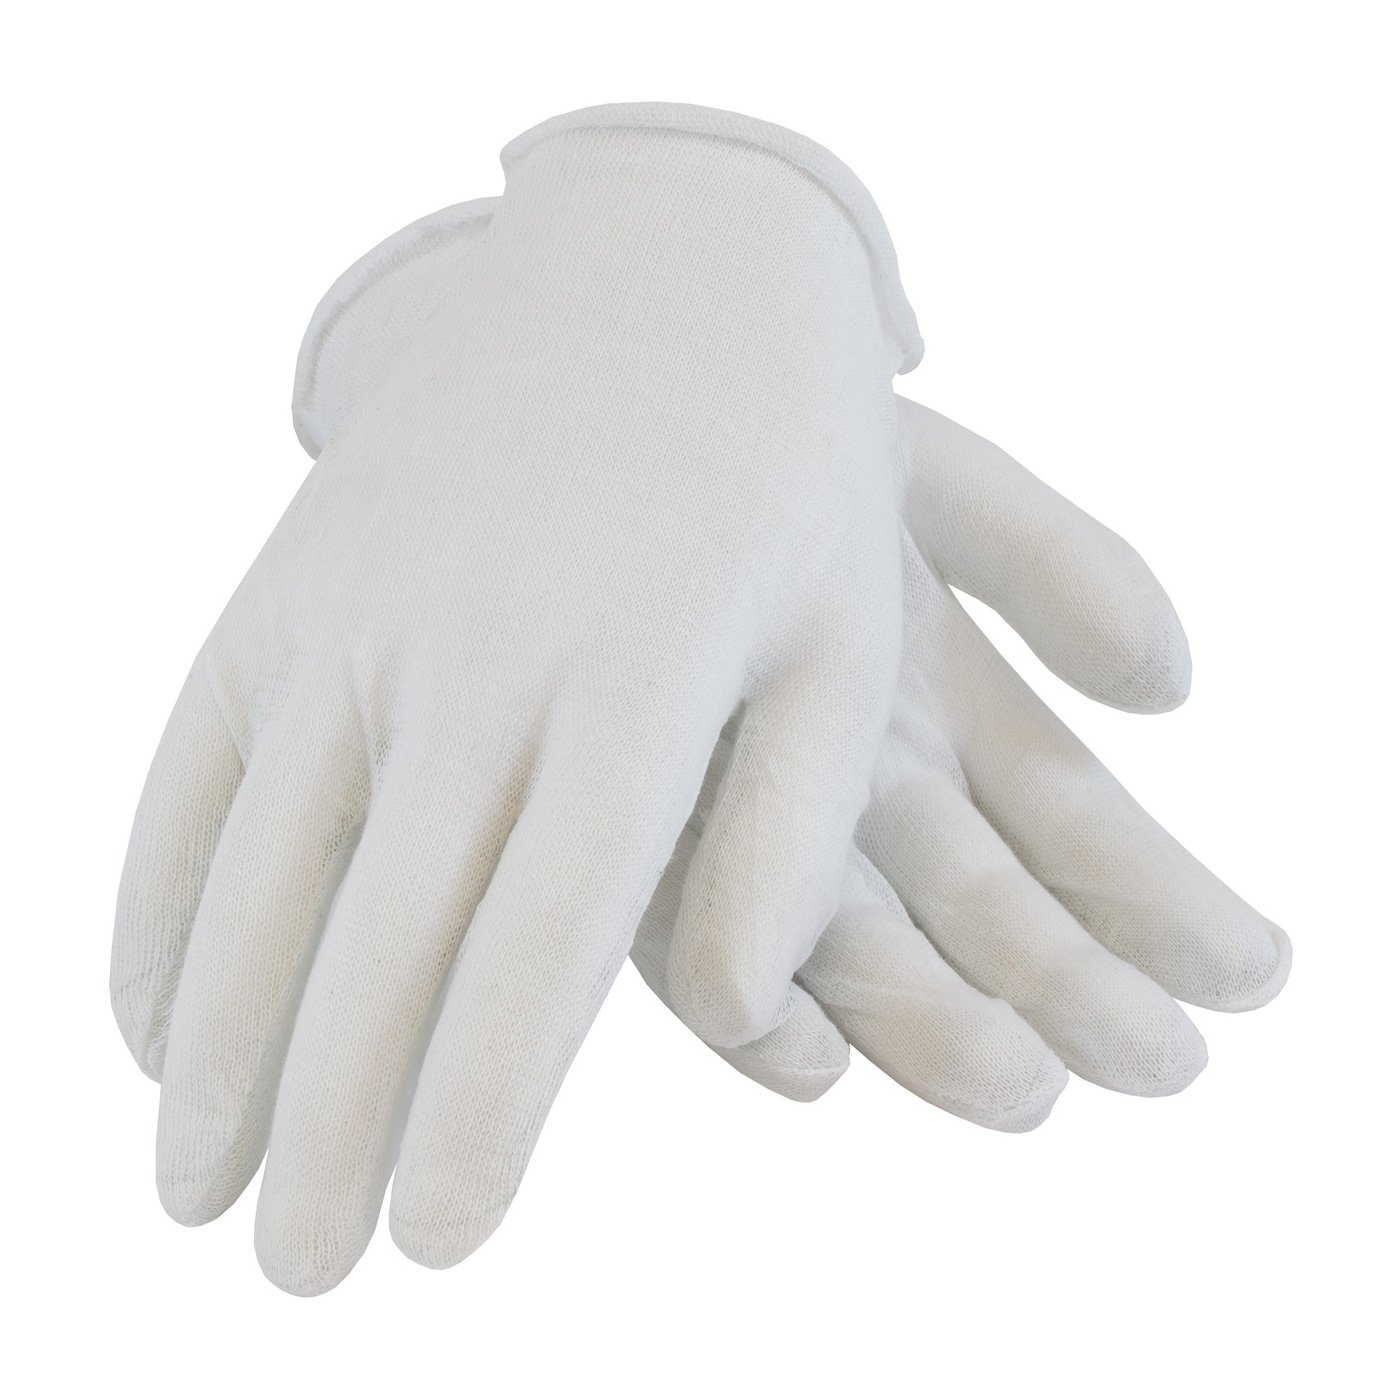 Cotton Inspectors Gloves